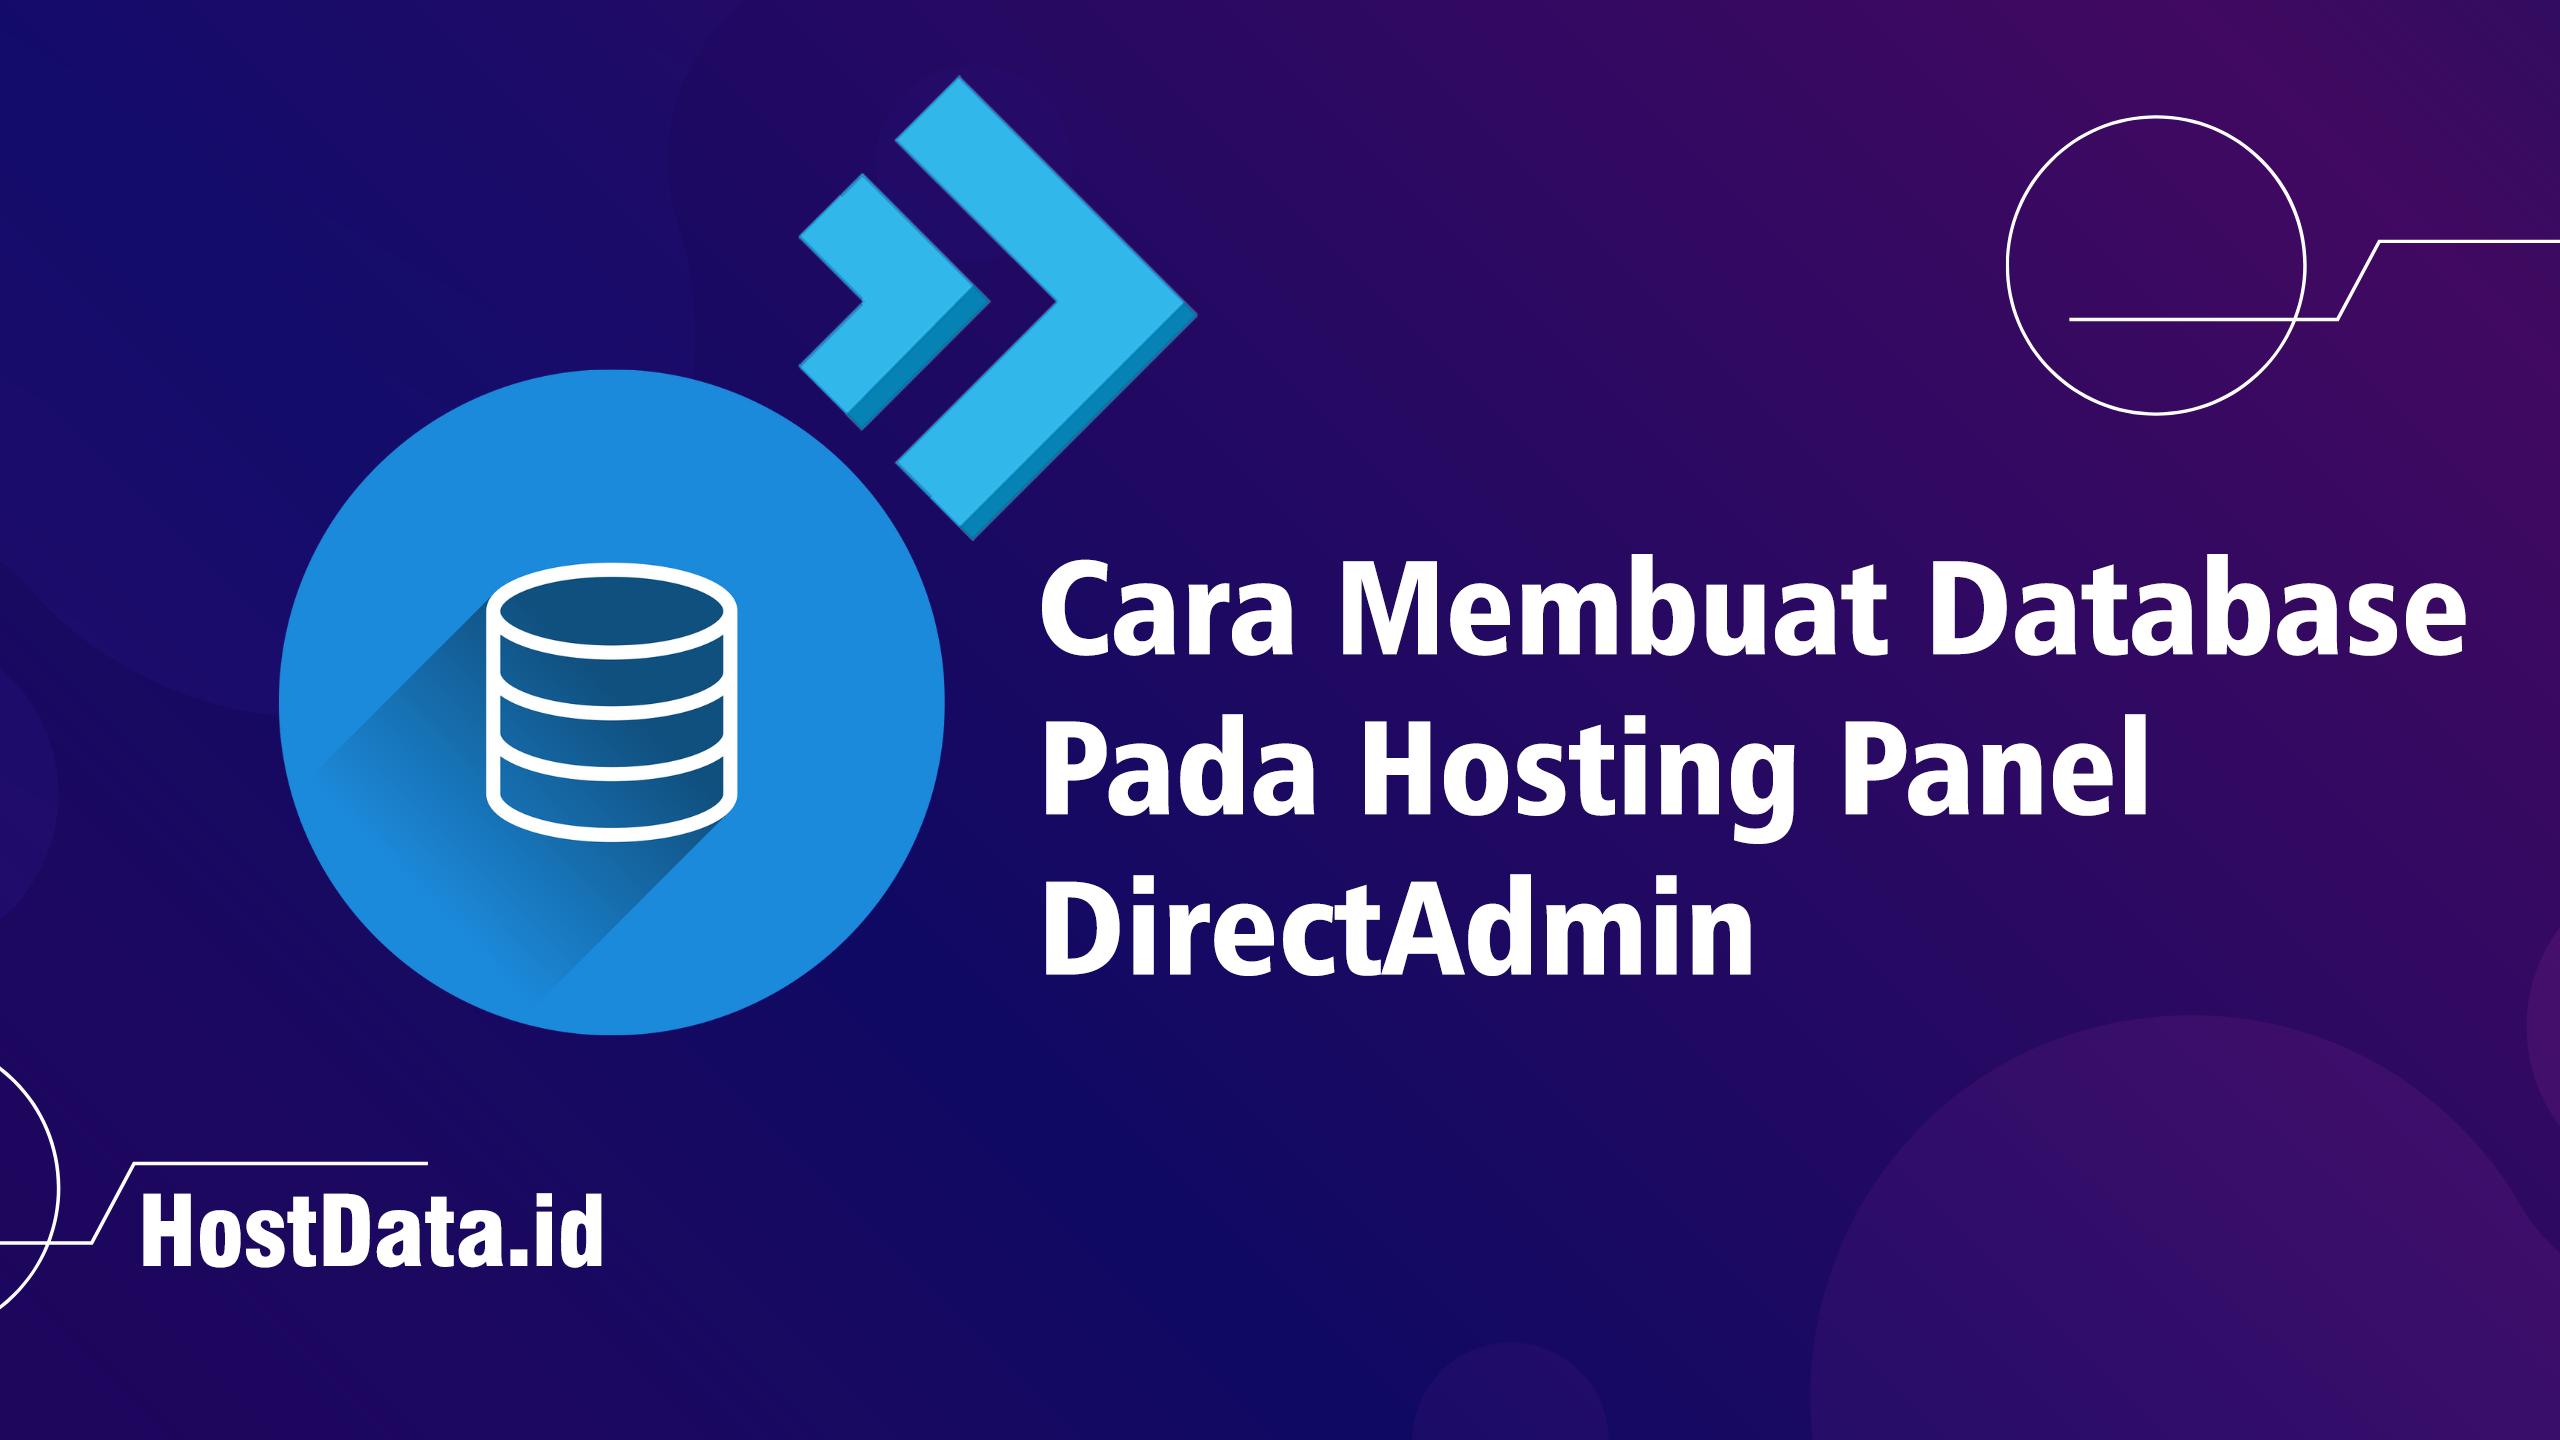 Cara Membuat Database Pada Hosting Panel DirectAdmin